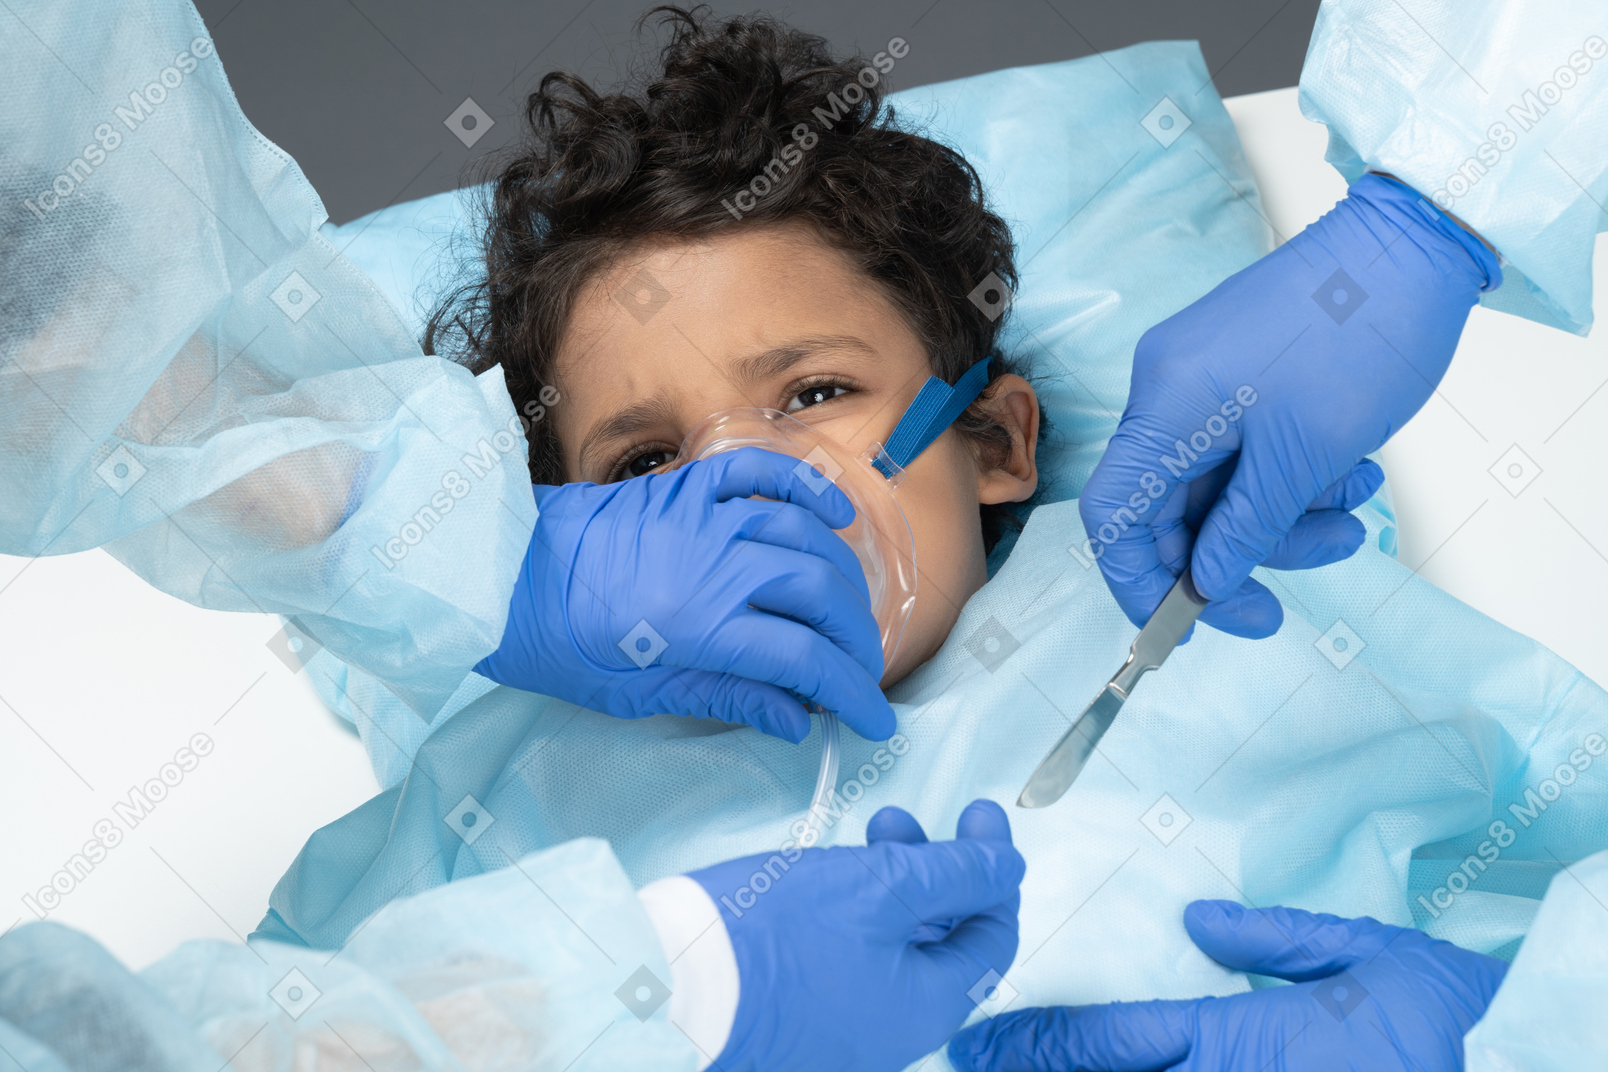 Surgeon operating on kid